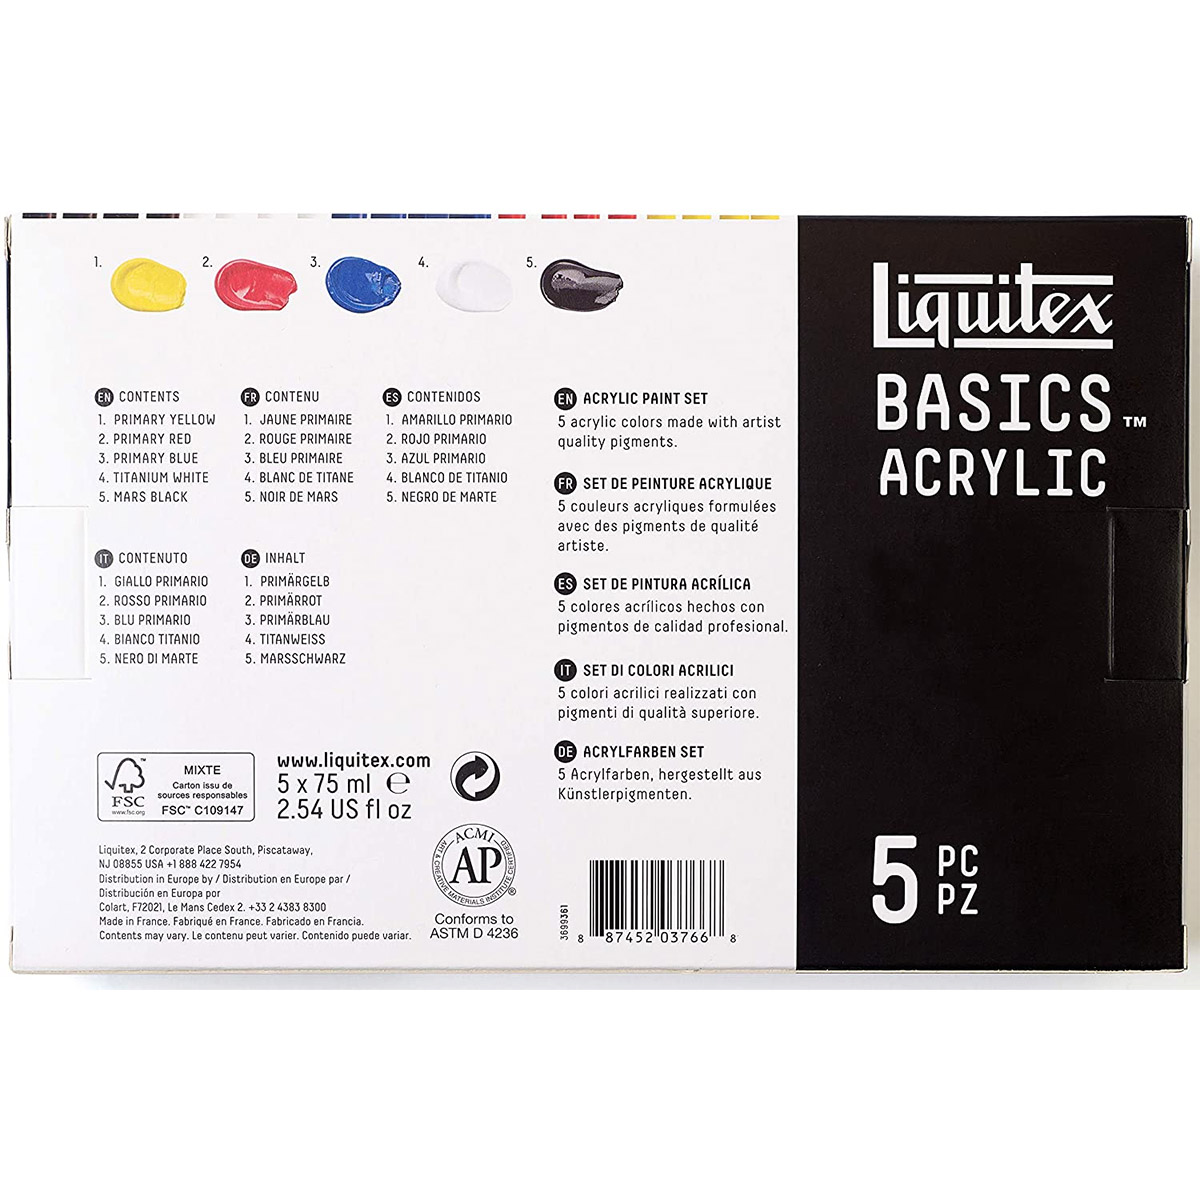 Liquitex BASICS Acrylic Paint Tubes